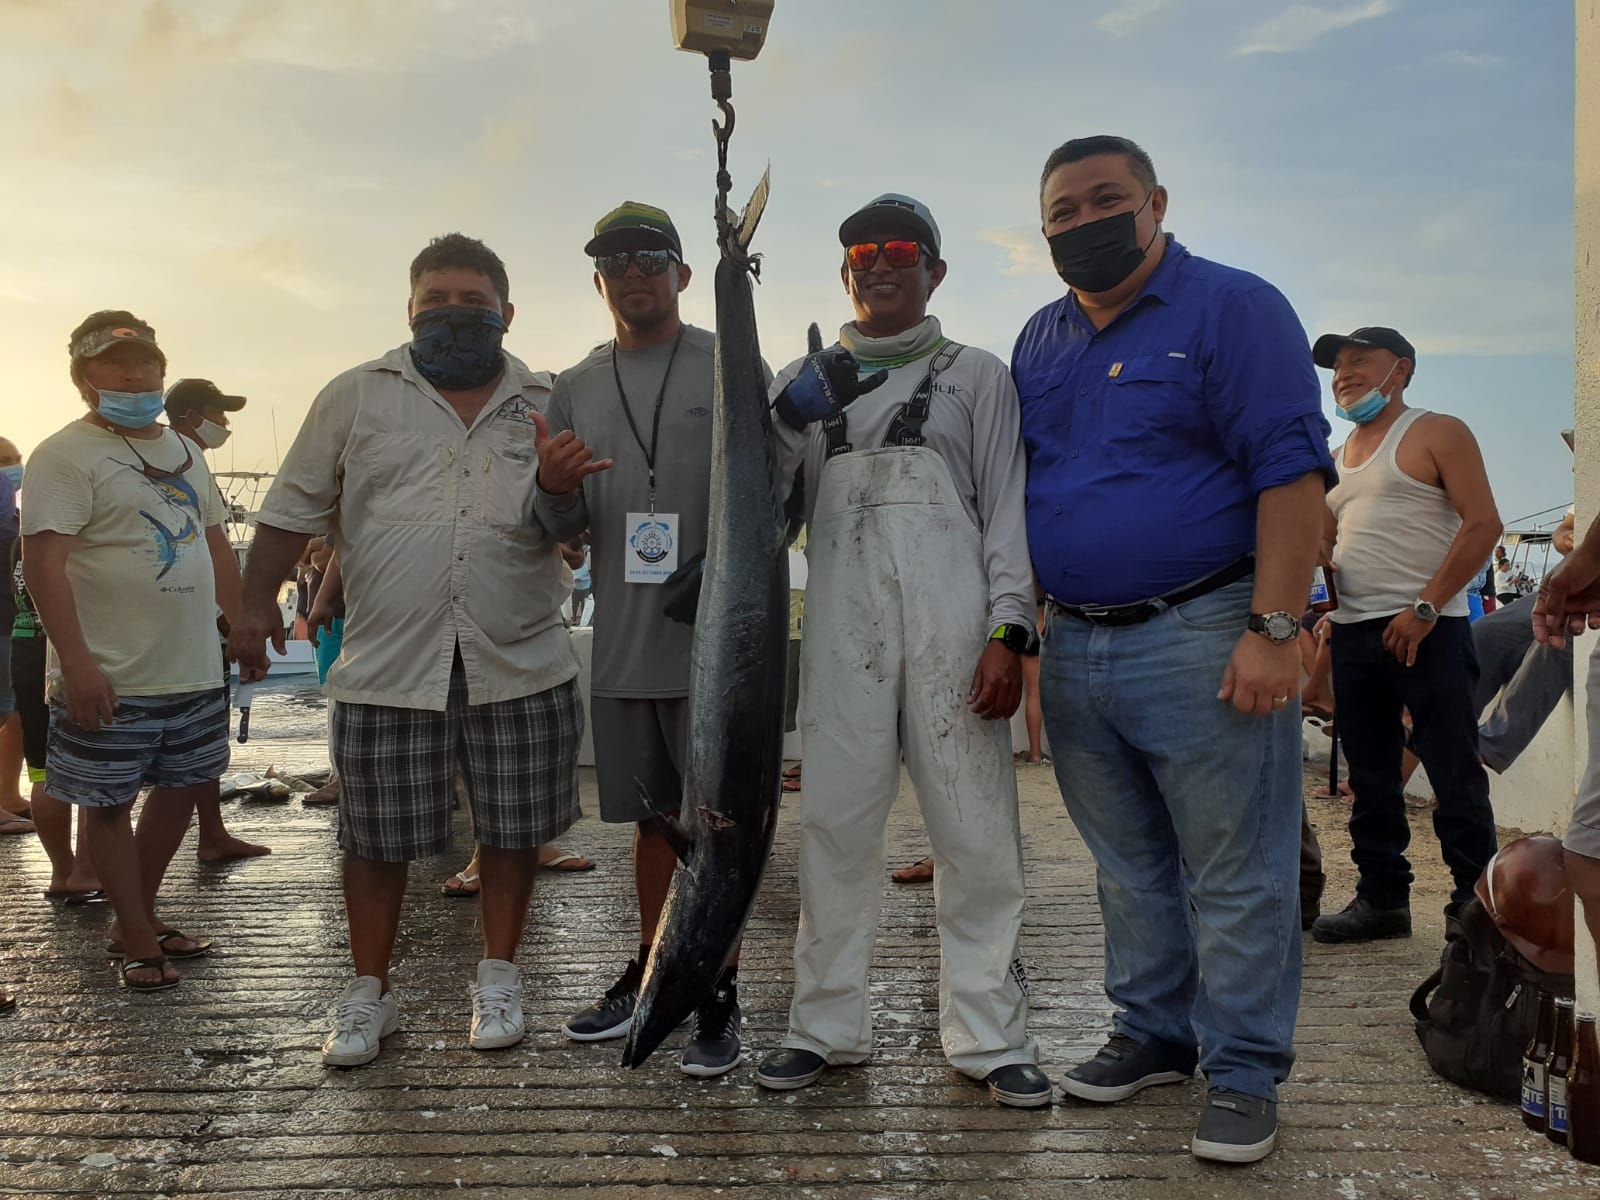 Embarcación de Puerto Aventuras 'arrasa' con torneo de pesca en Cozumel